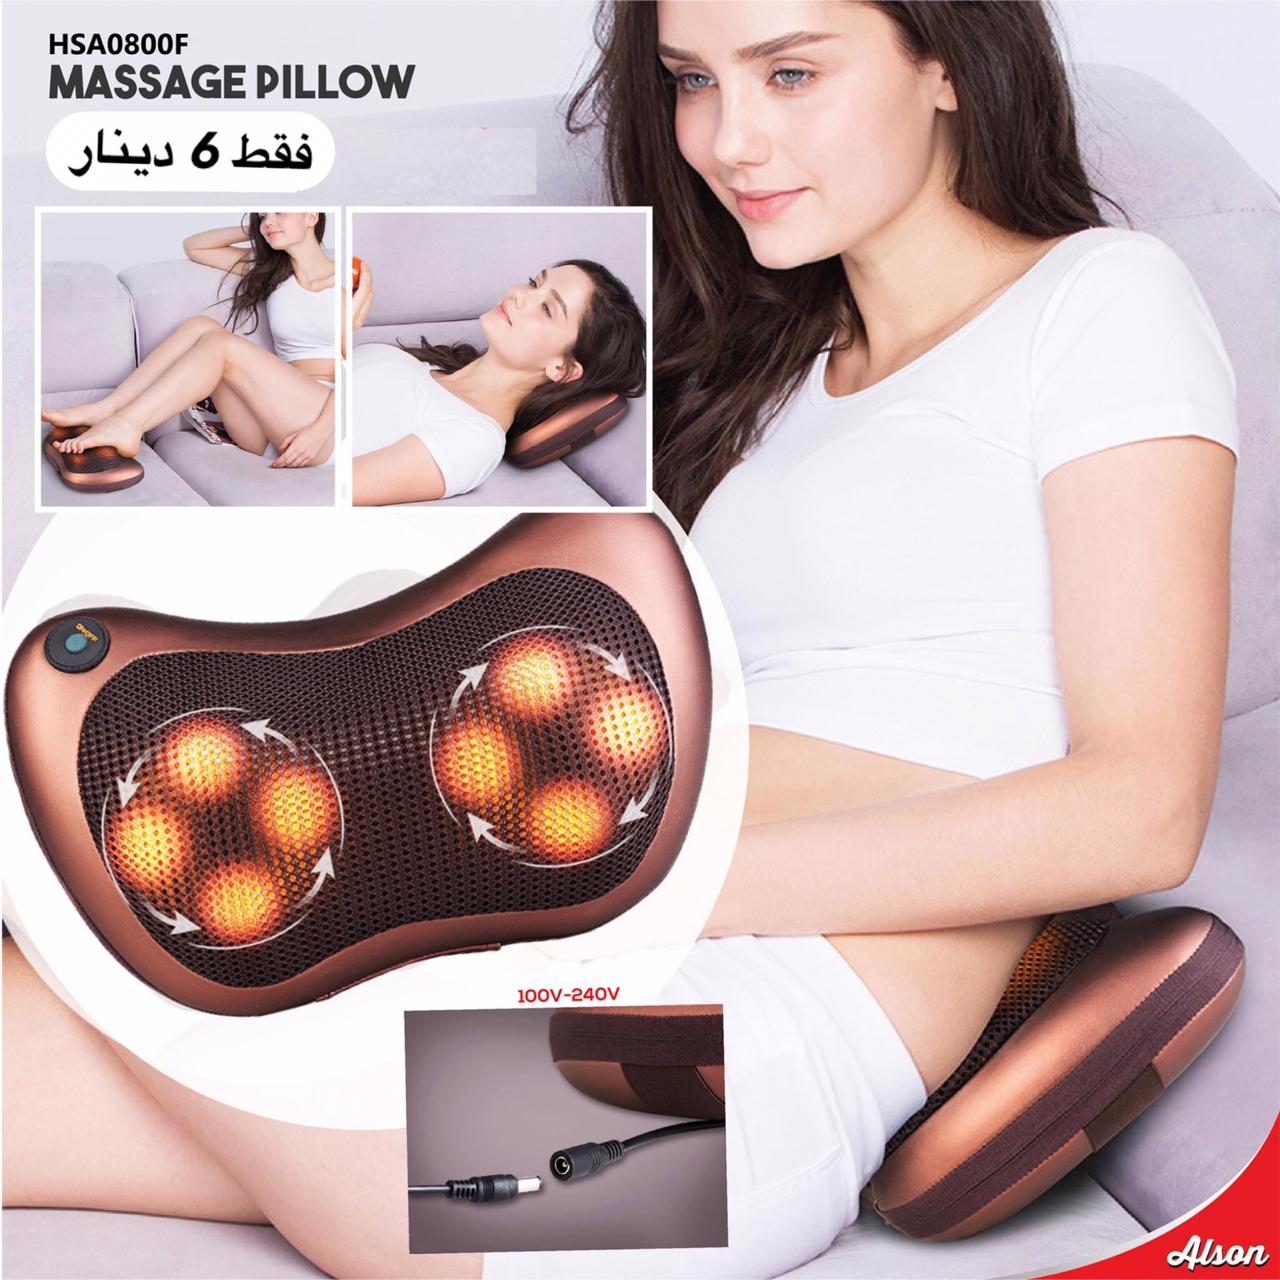 massager pillow